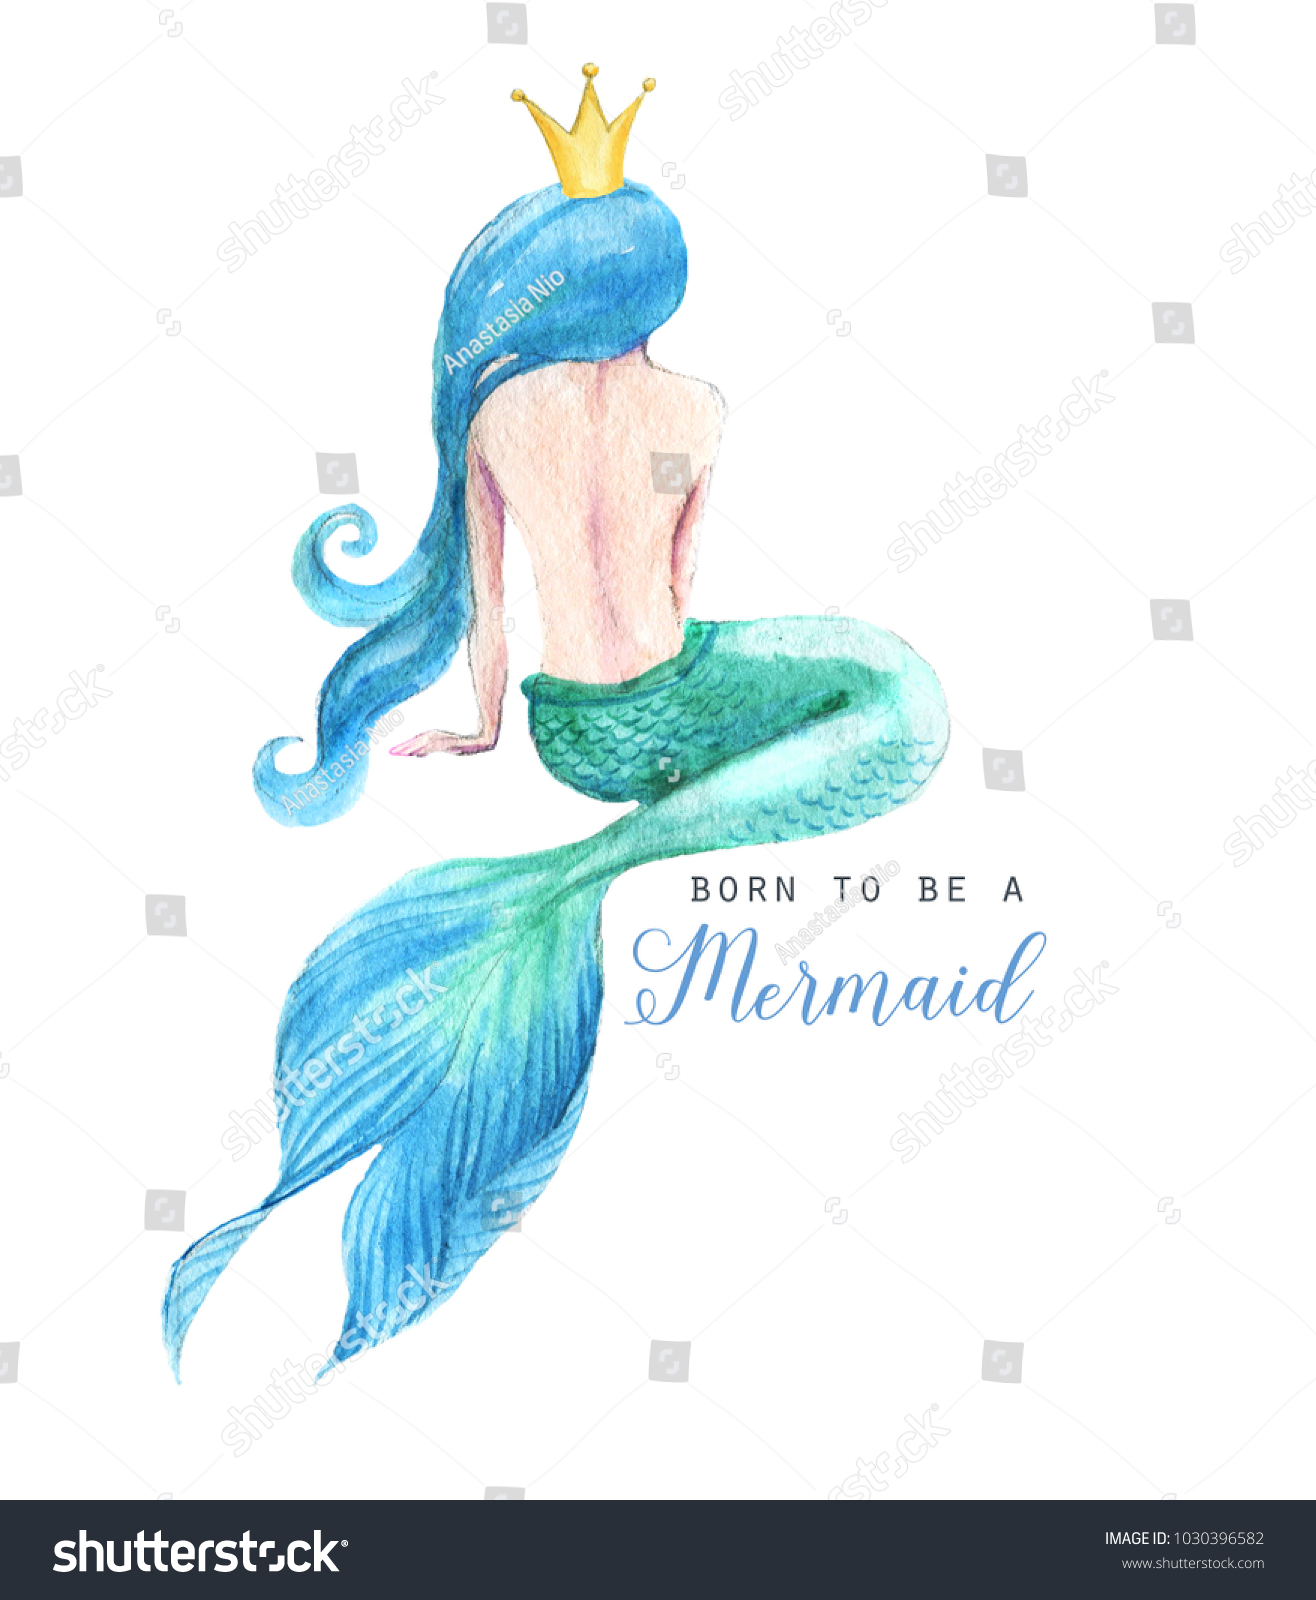 手描きの水彩美しい人魚のキャラクターイラスト ポスター カード 招待状の海のテンプレート 人魚として生まれた のイラスト素材